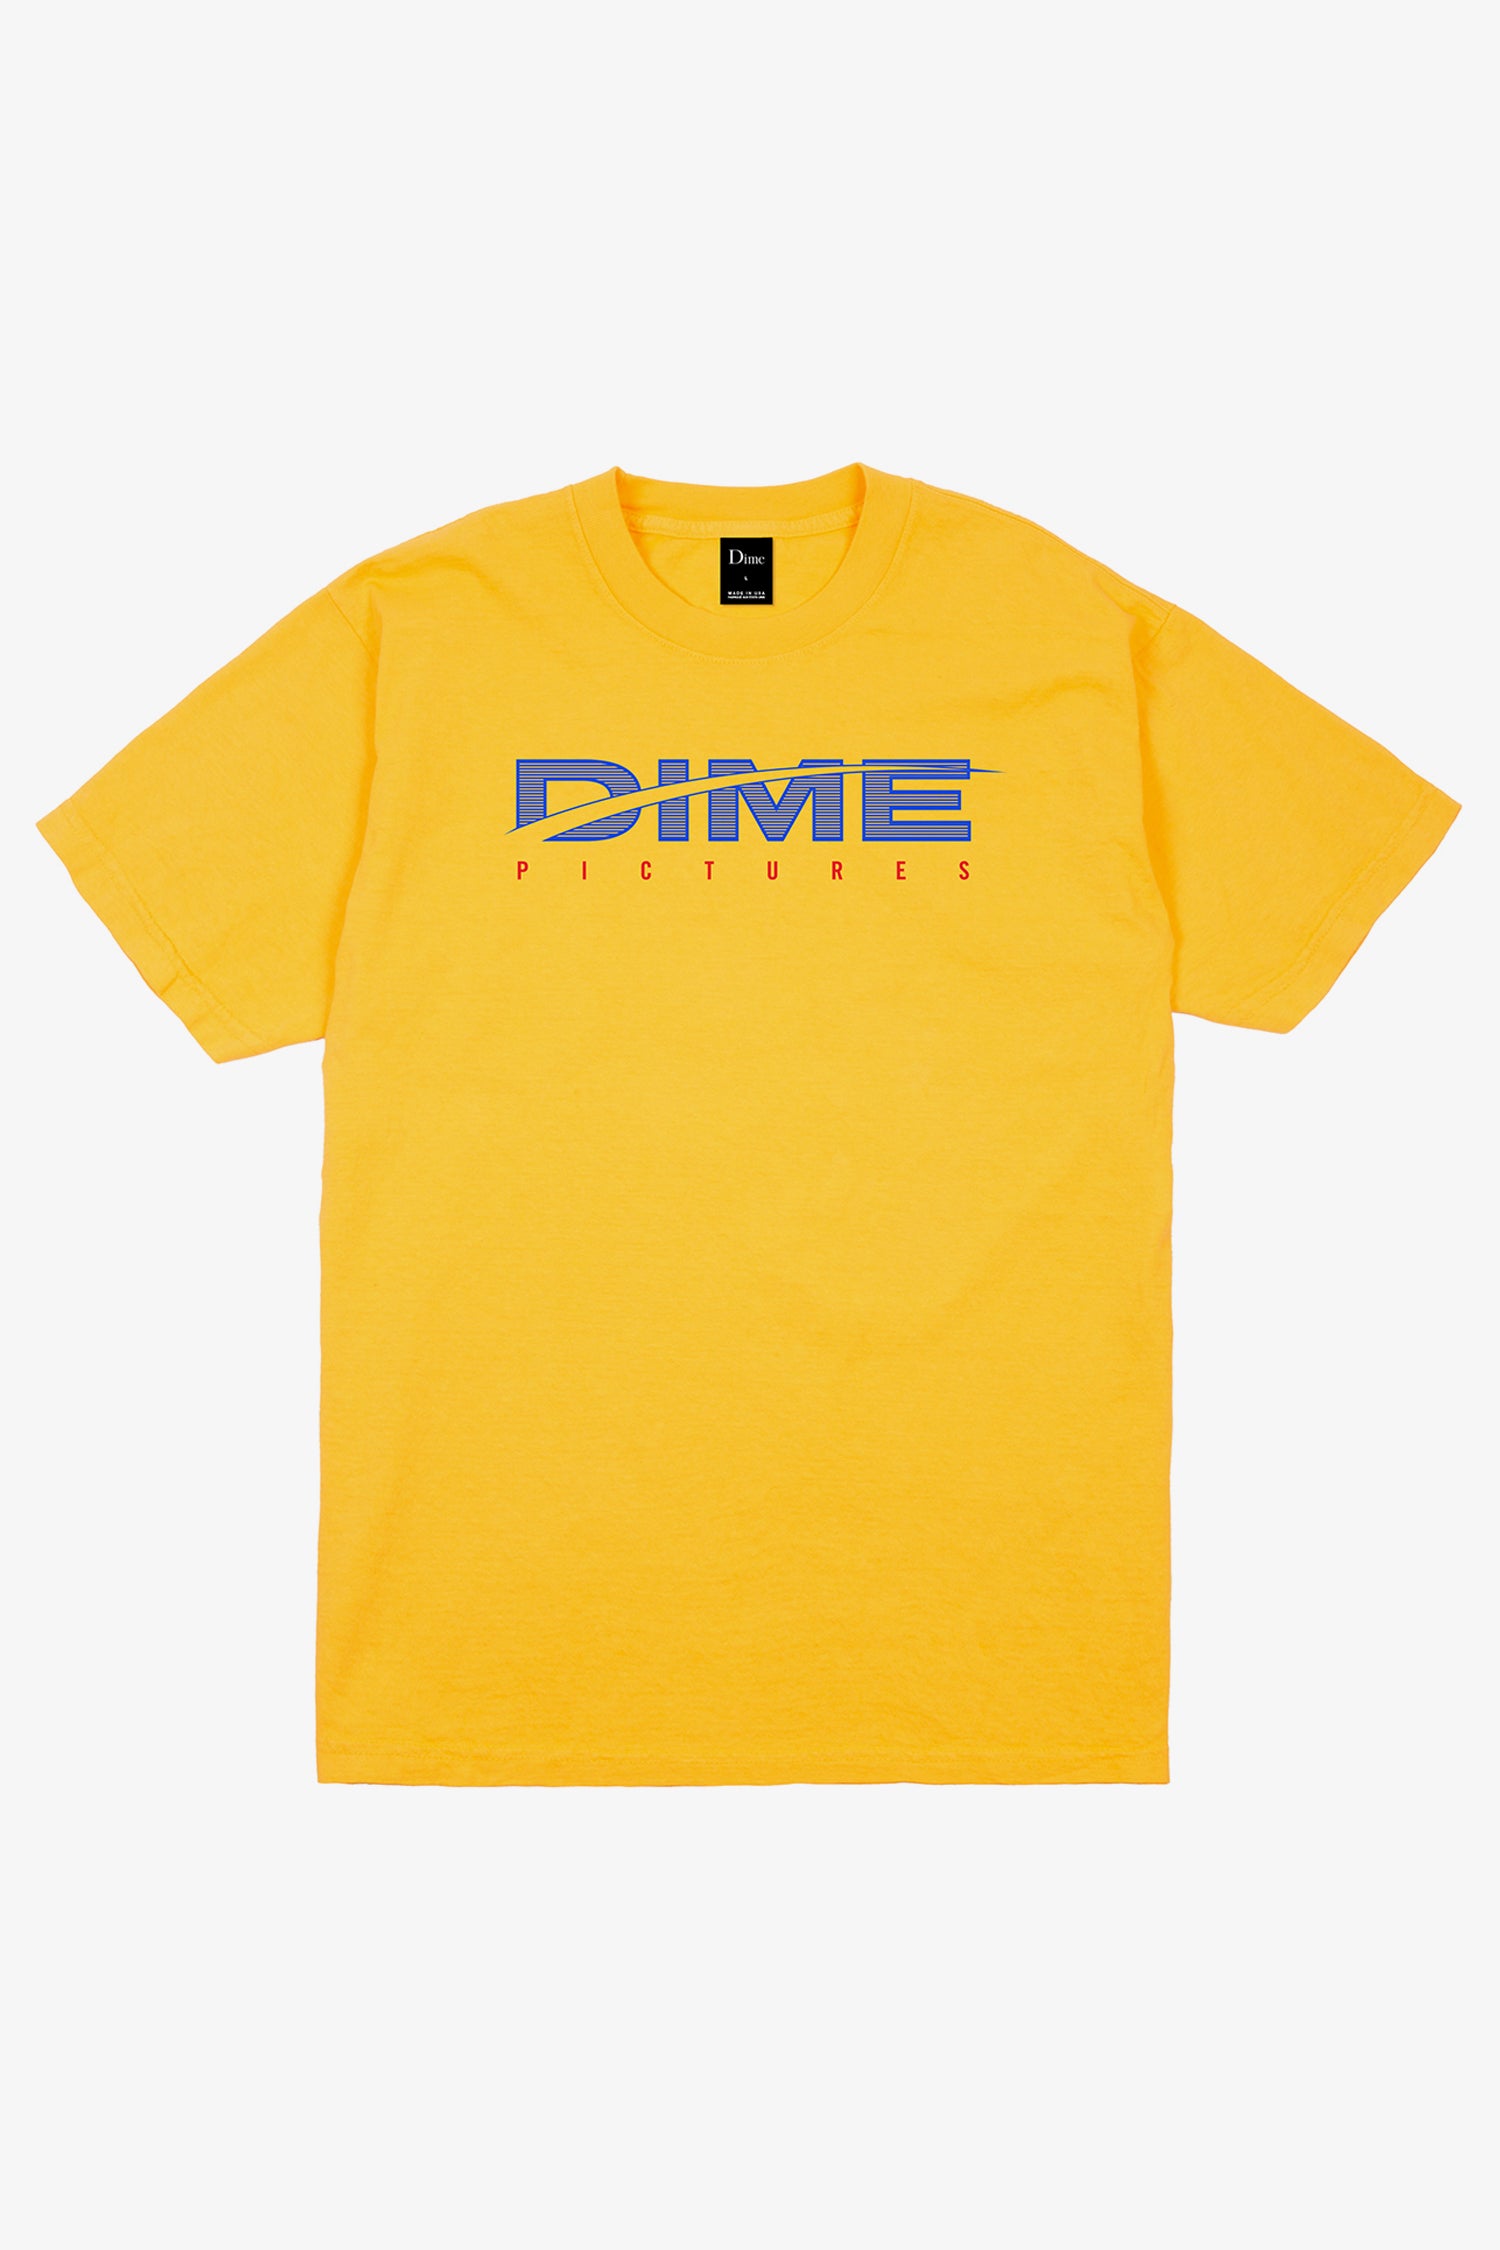 Selectshop FRAME - DIME Dime Pictures T-Shirt T-Shirt Dubai